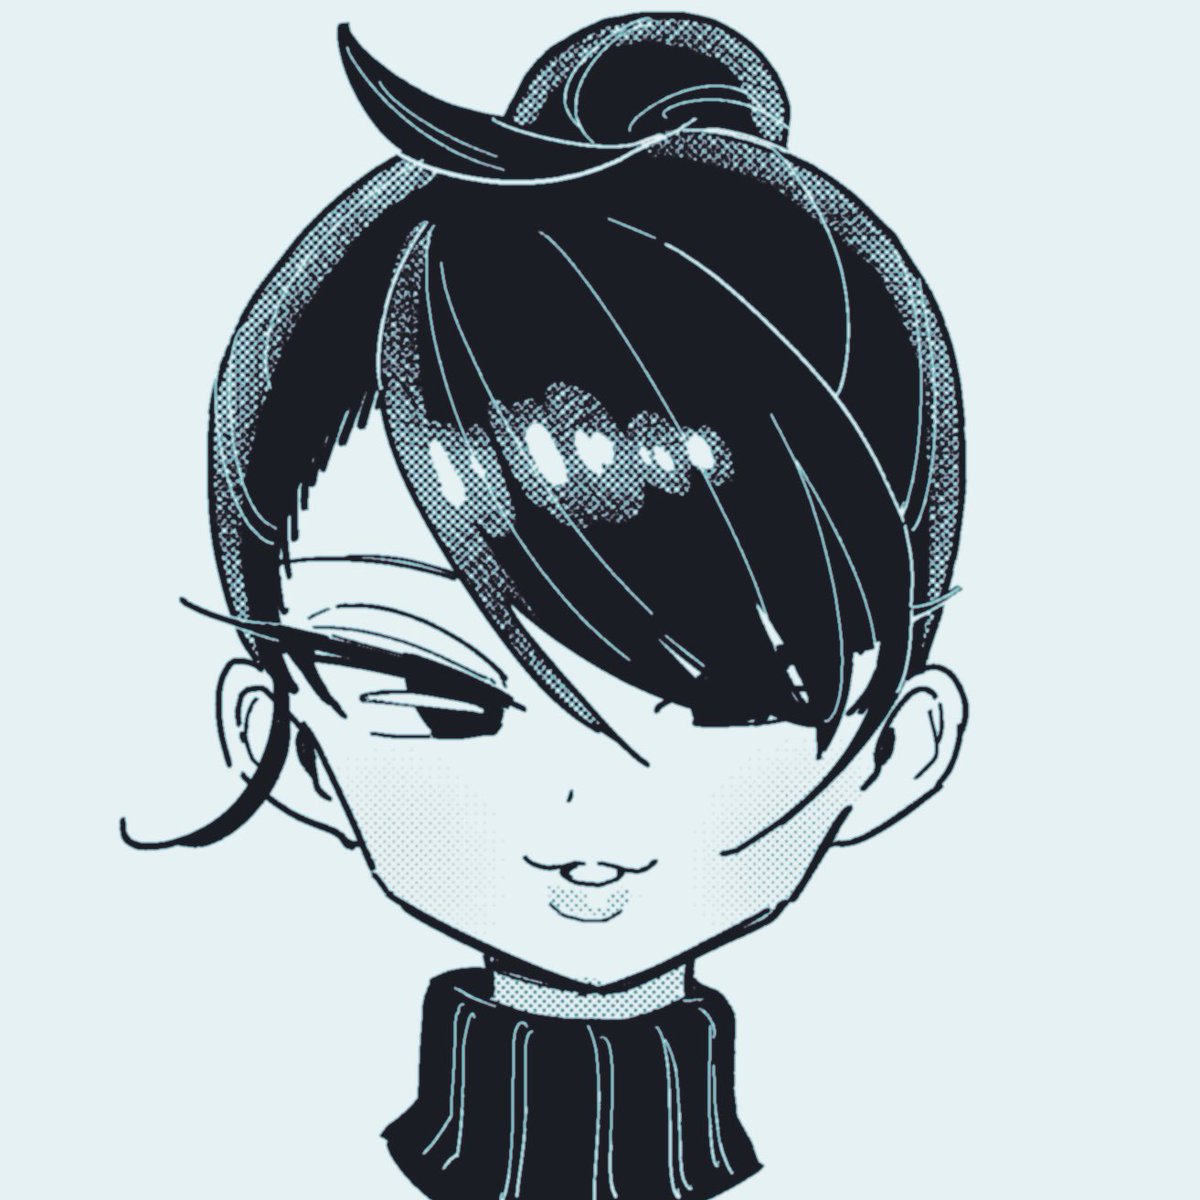 「平綾マリさん #オリジナル
顔描くの難しい 」|えいす🏐COMITIA N01bのイラスト